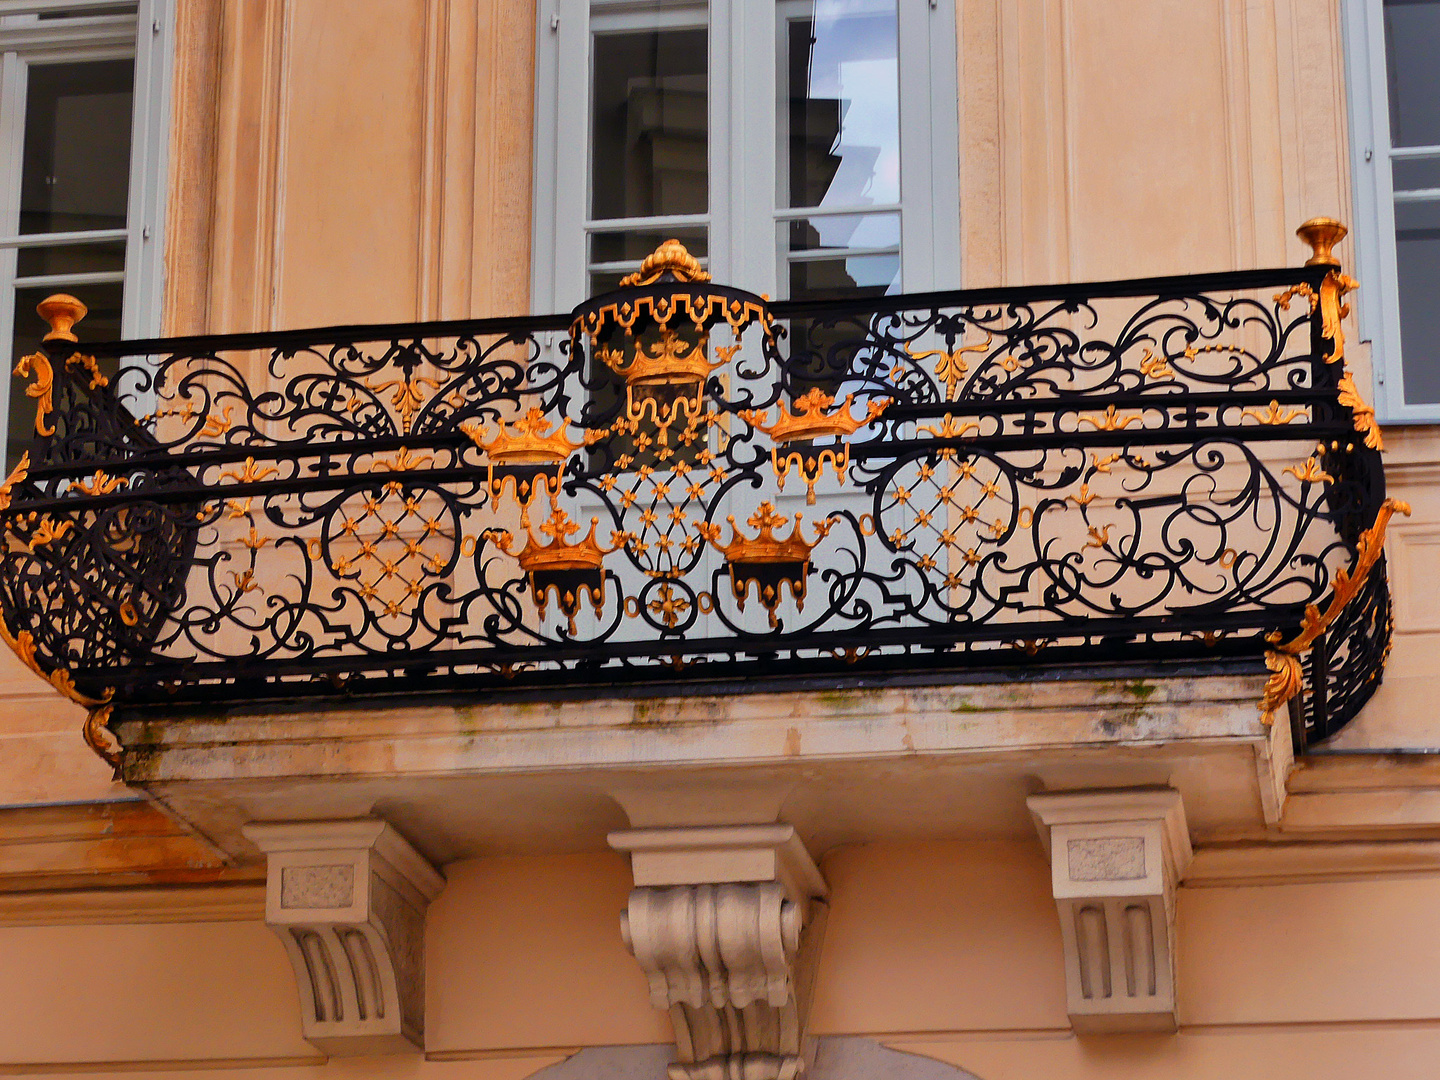 Alter Balkon in Wien